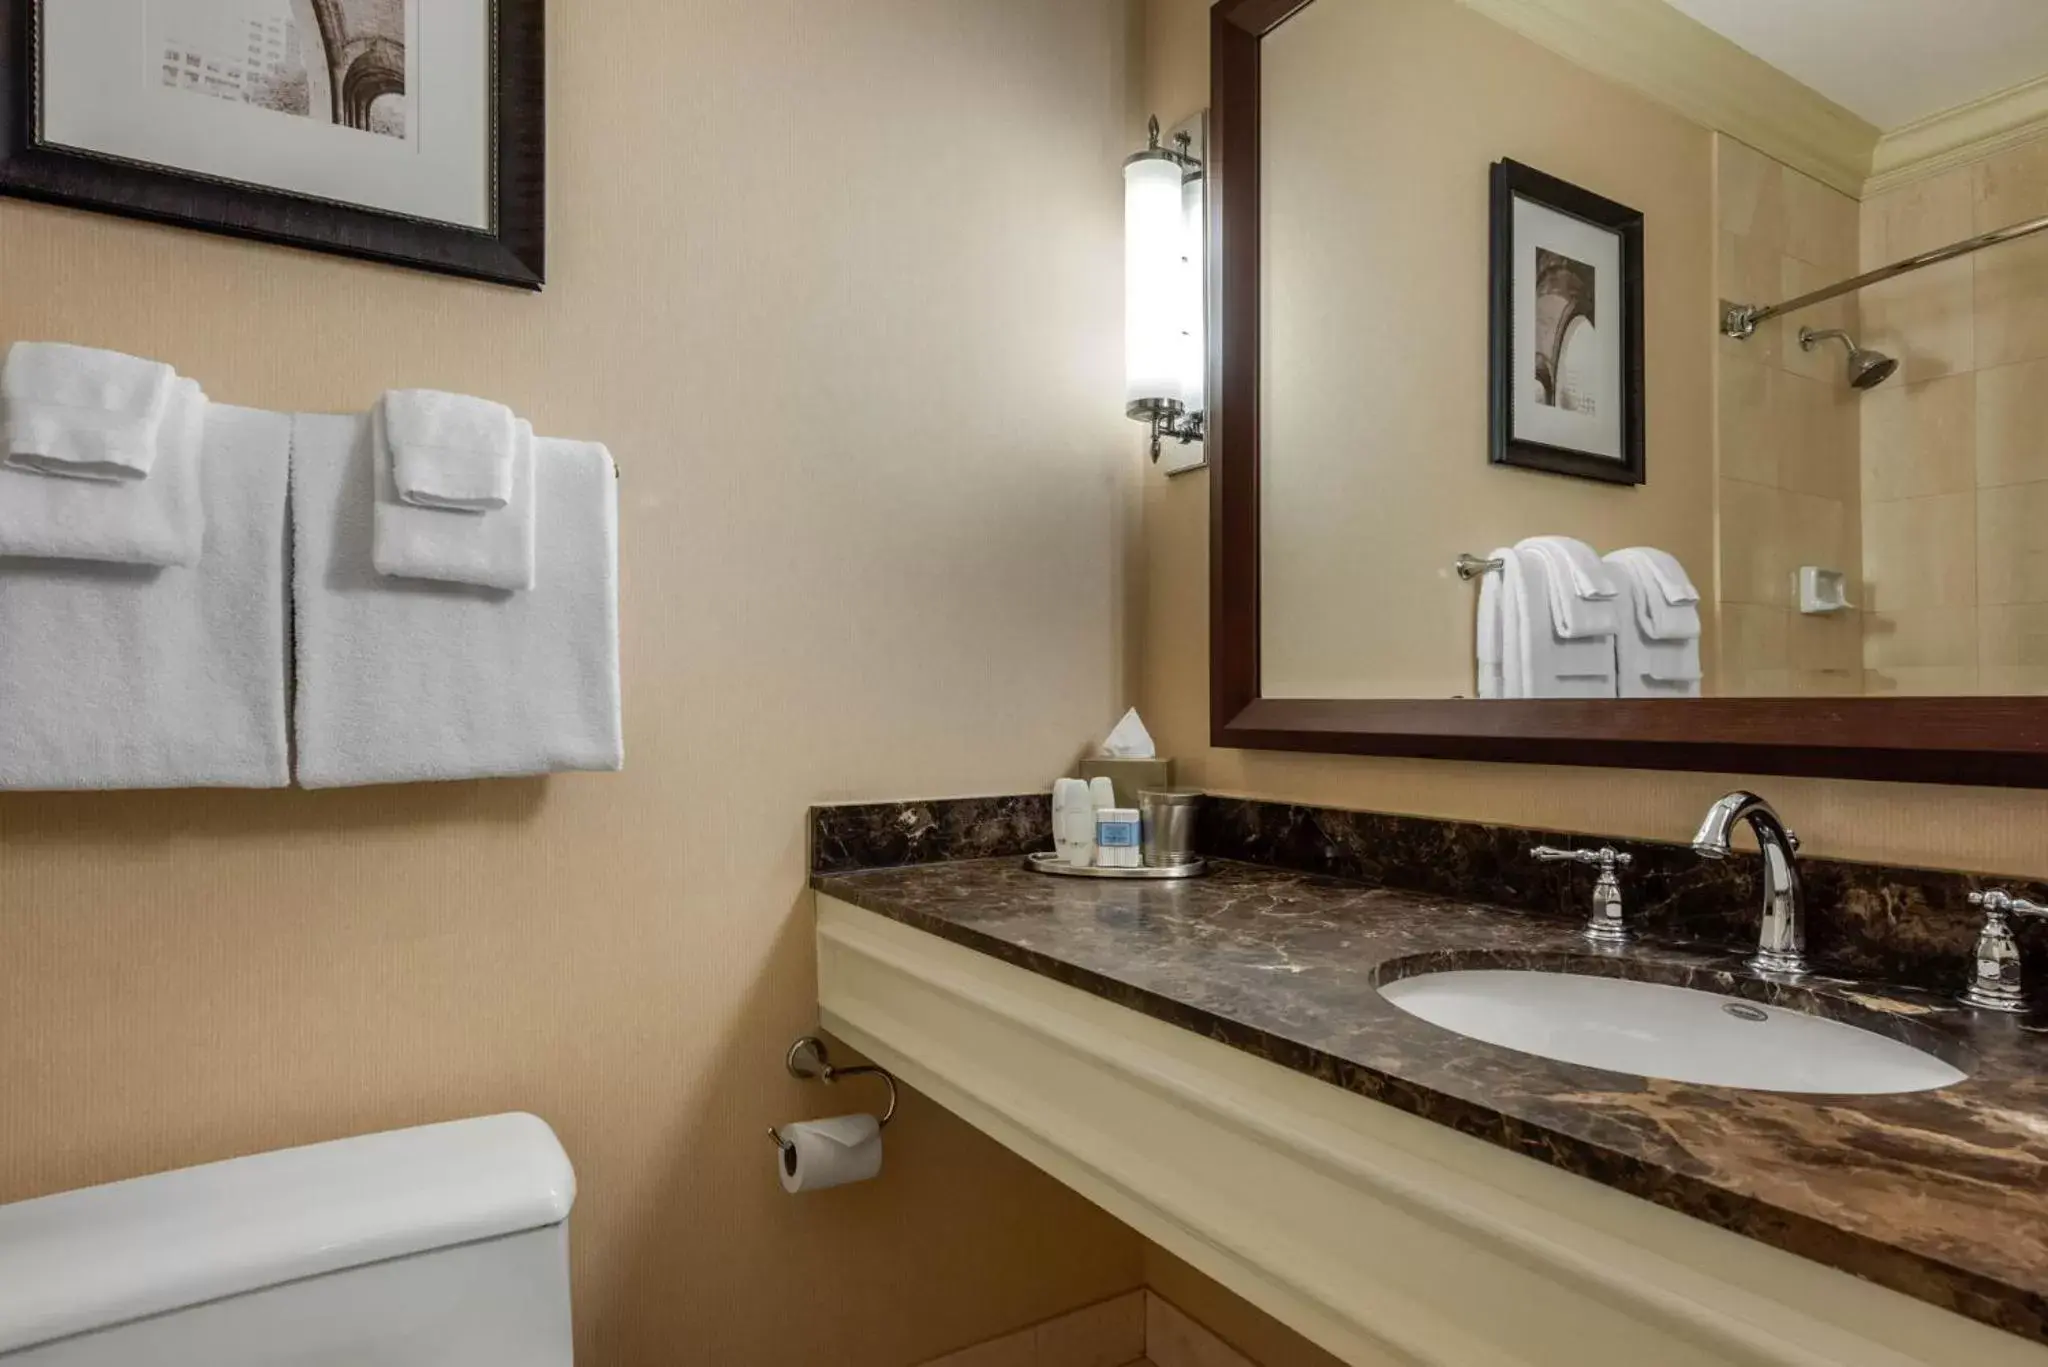 Bathroom in Omni William Penn Hotel